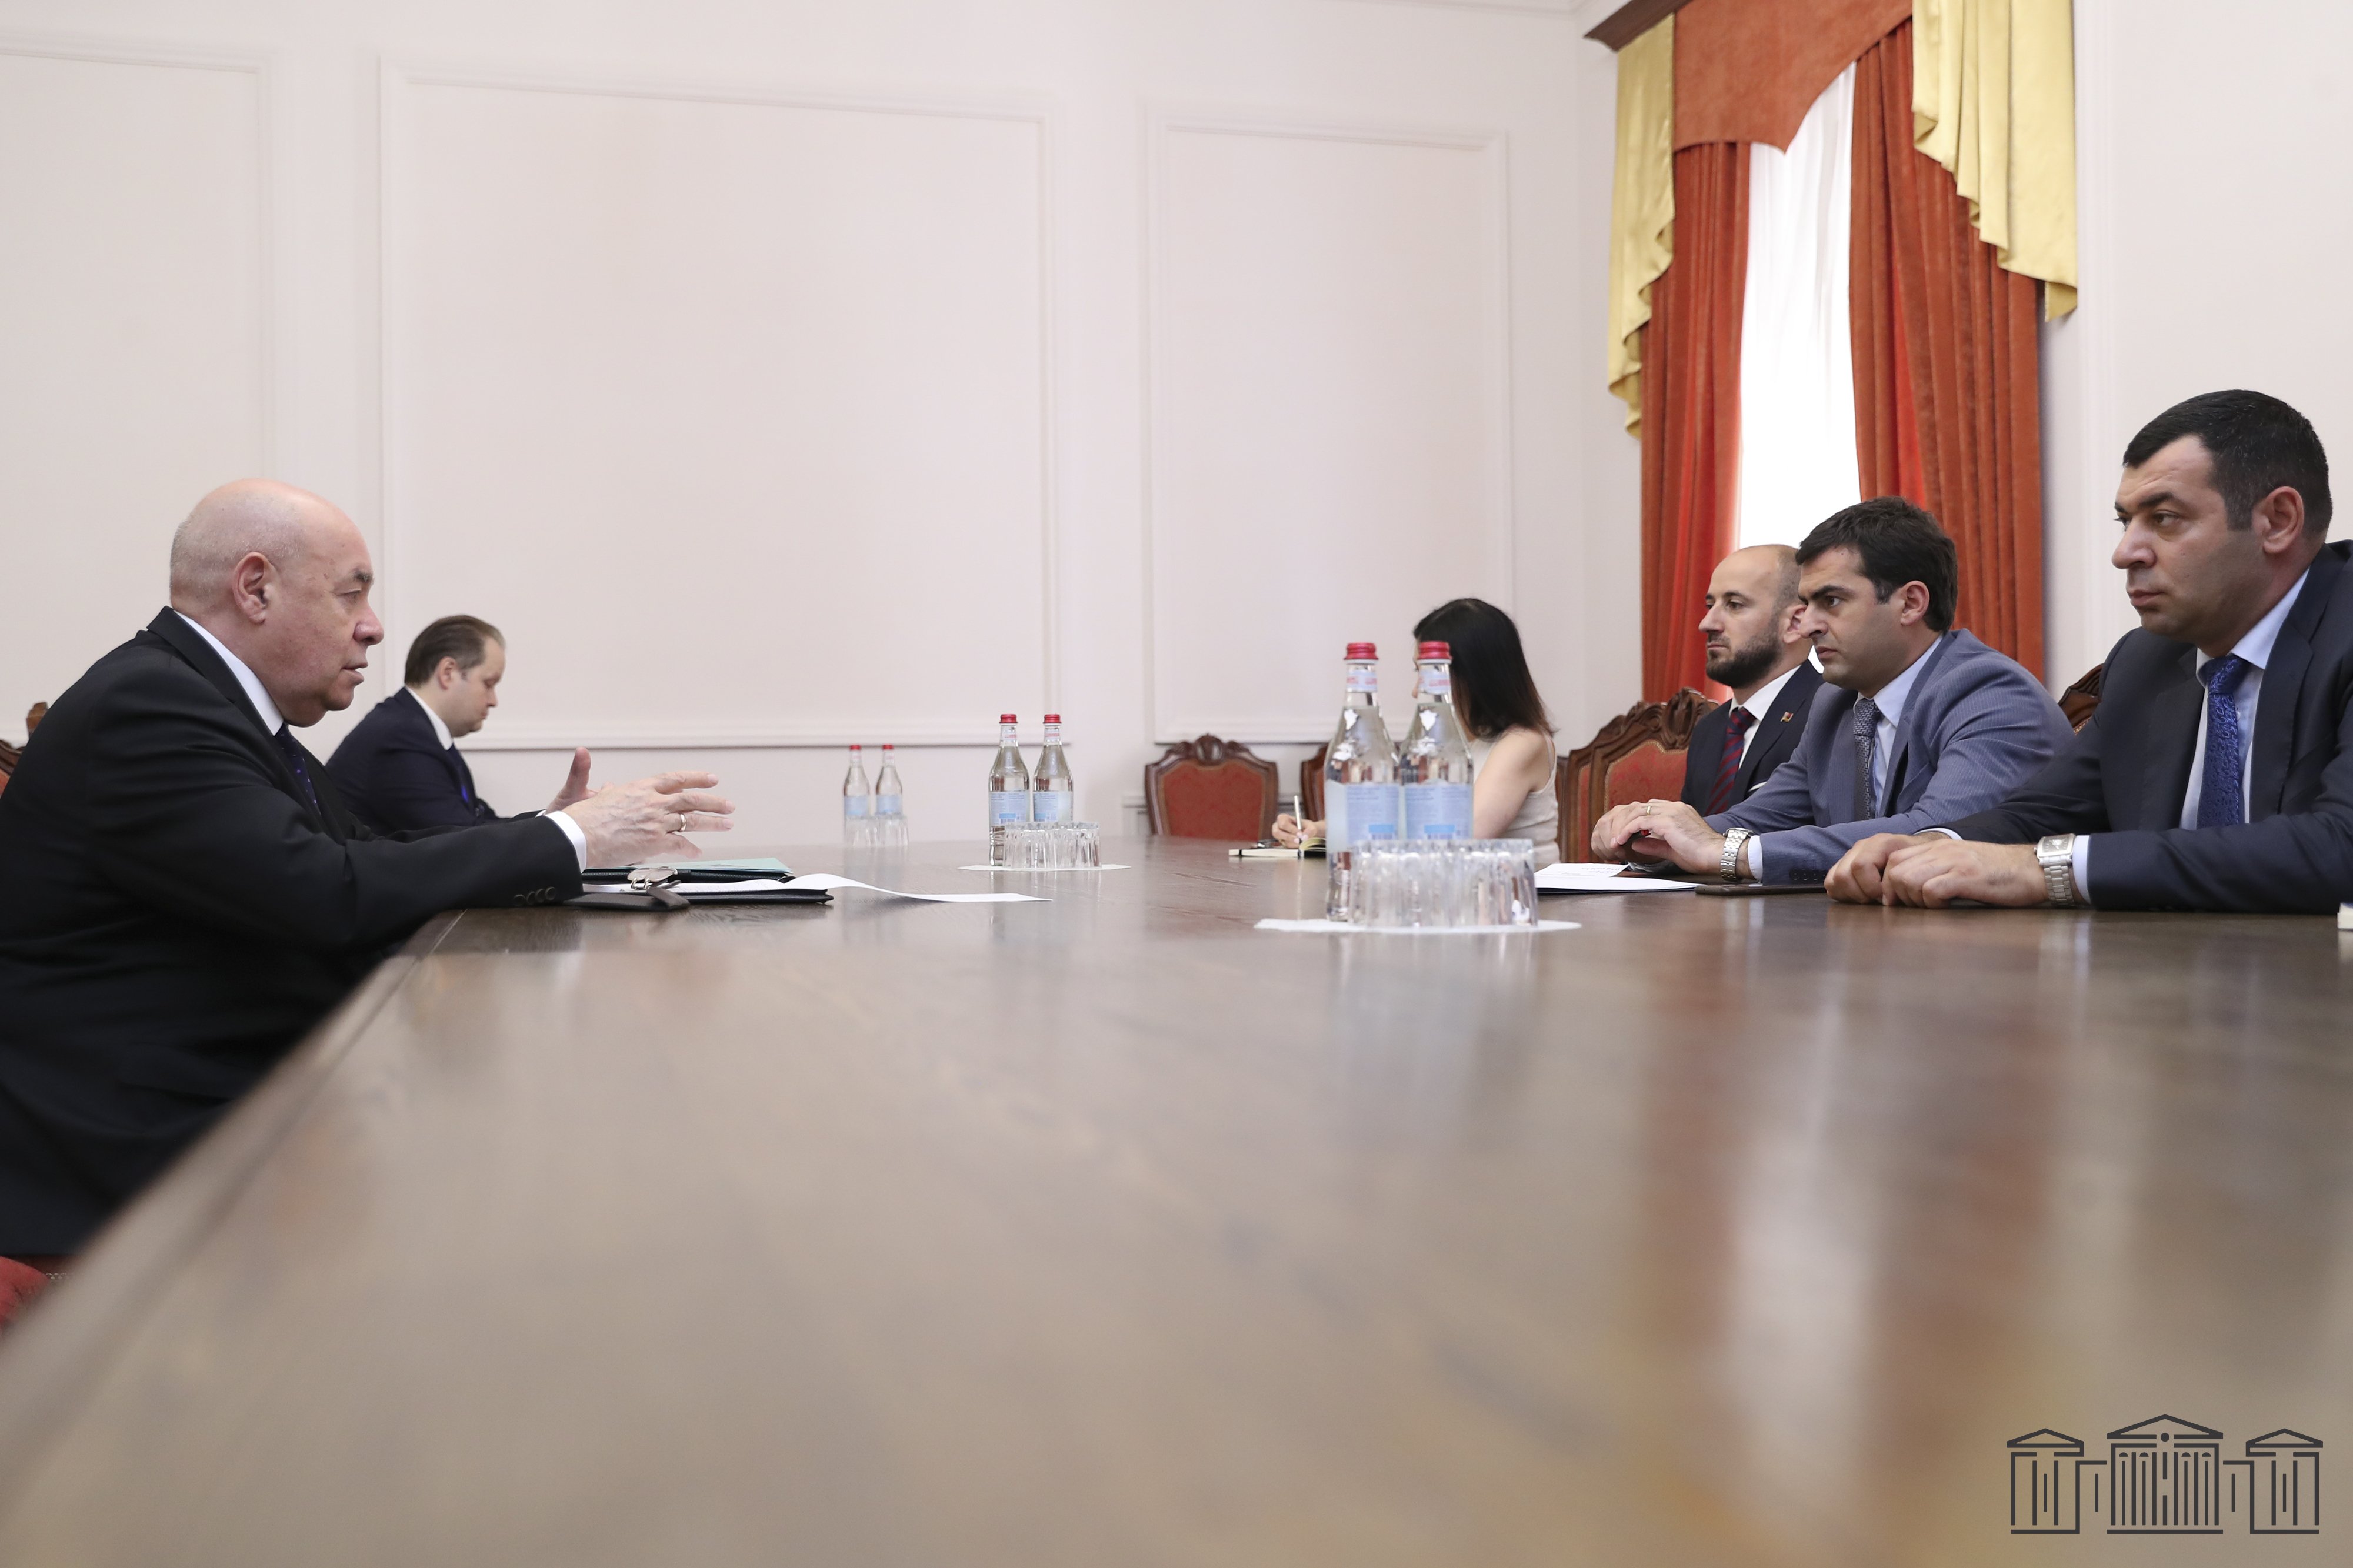 Հակոբ Արշակյանը ՌԴ նախագահի հատուկ ներկայացուցչի հետ քննարկել է հայ-ռուսական դաշնակցային հարաբերություններին առնչվող հարցեր